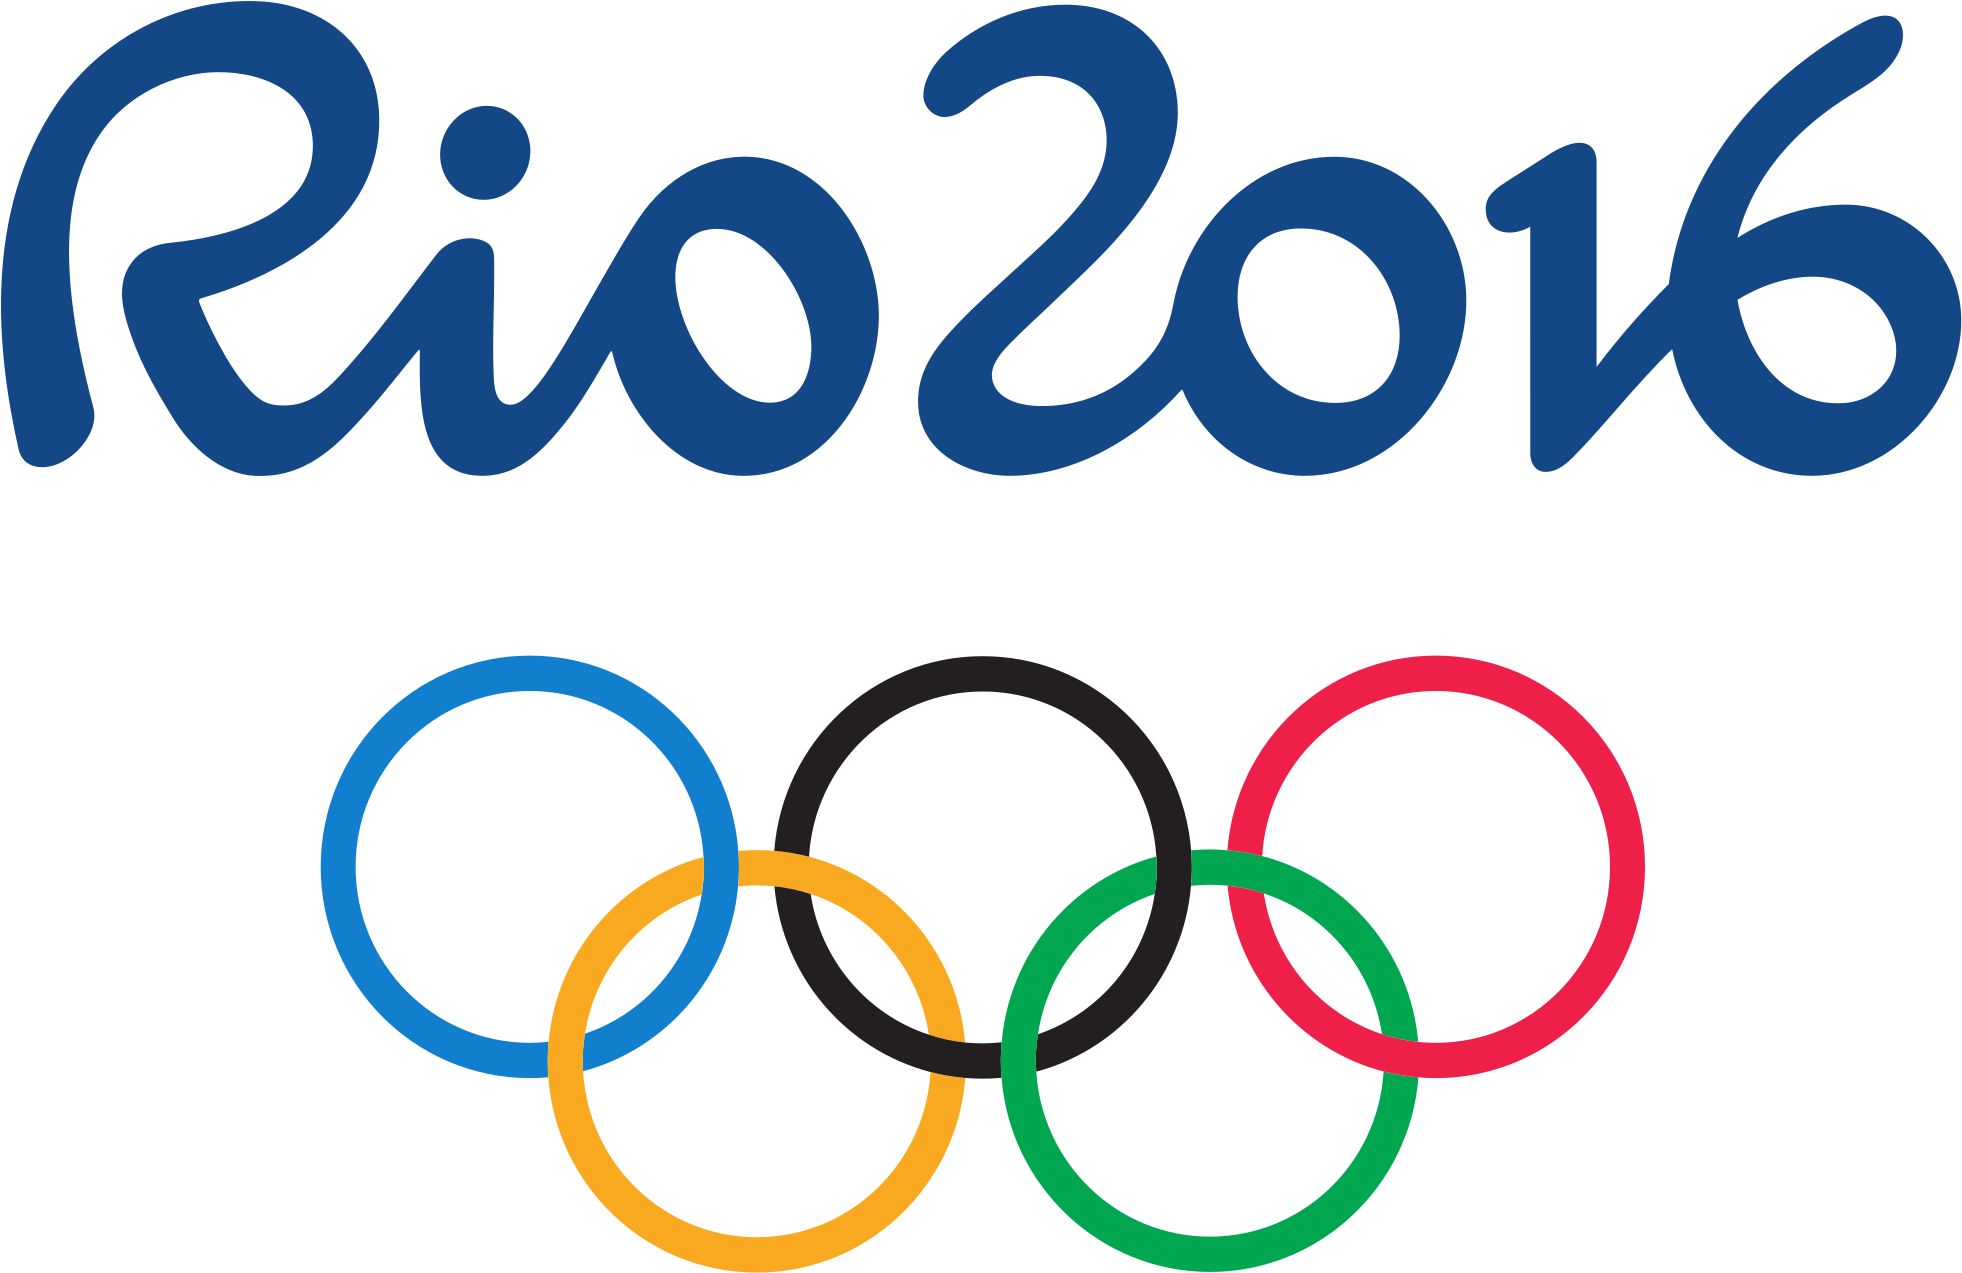 Rio2016 Olympics Logo